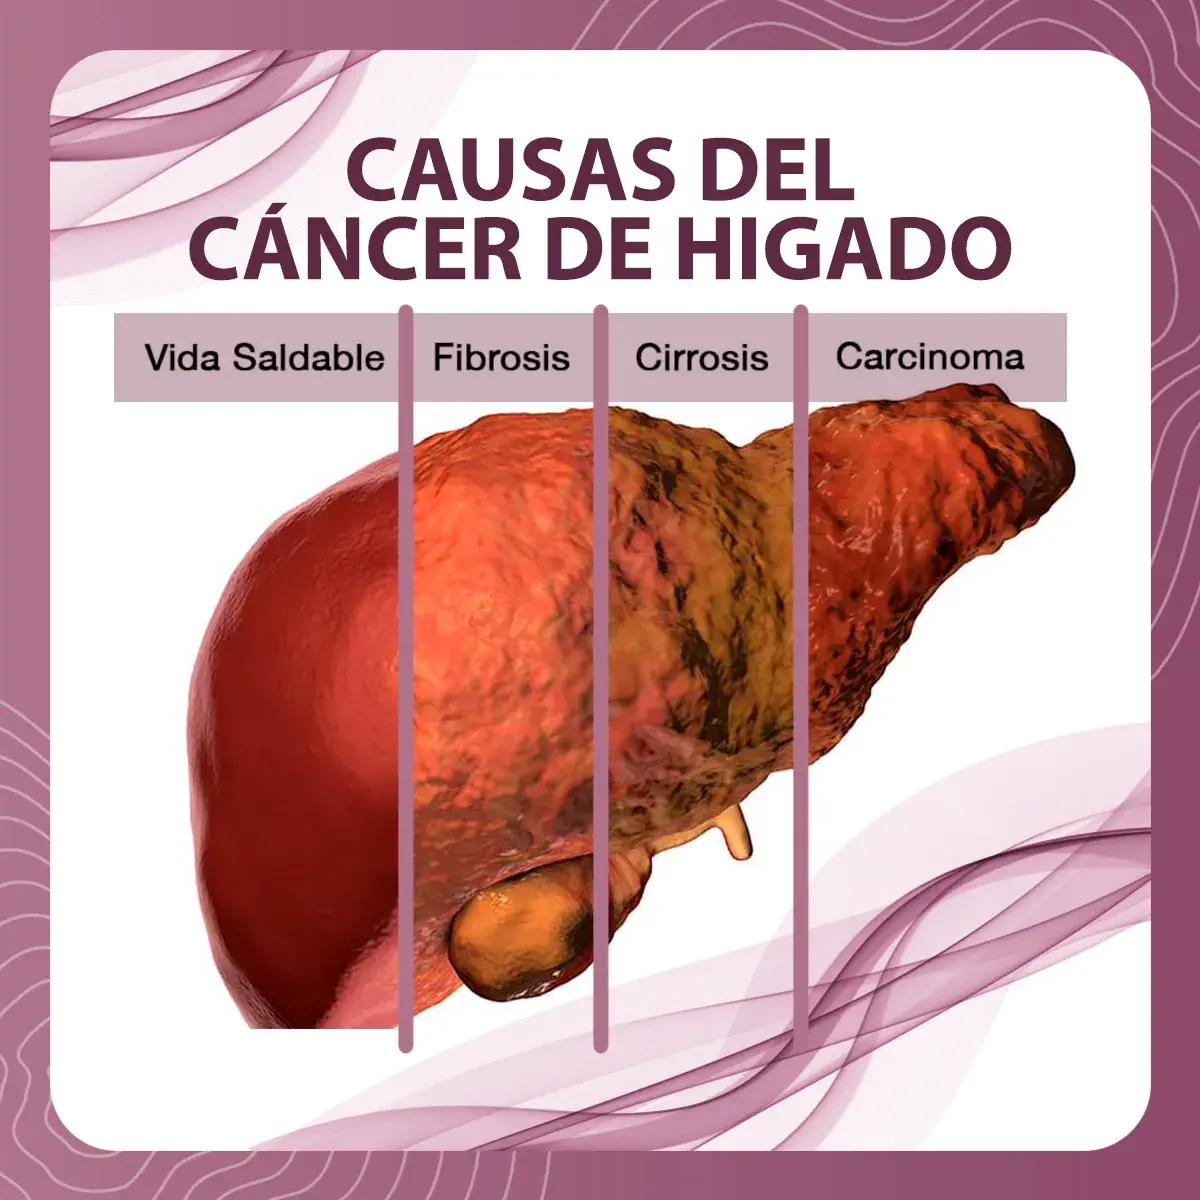 El cáncer de hígado pasa por un desarrollo en el cual primero el órgano está sano, posteriormente pasa por la fibrosis, cirrosis y al final el carcinoma